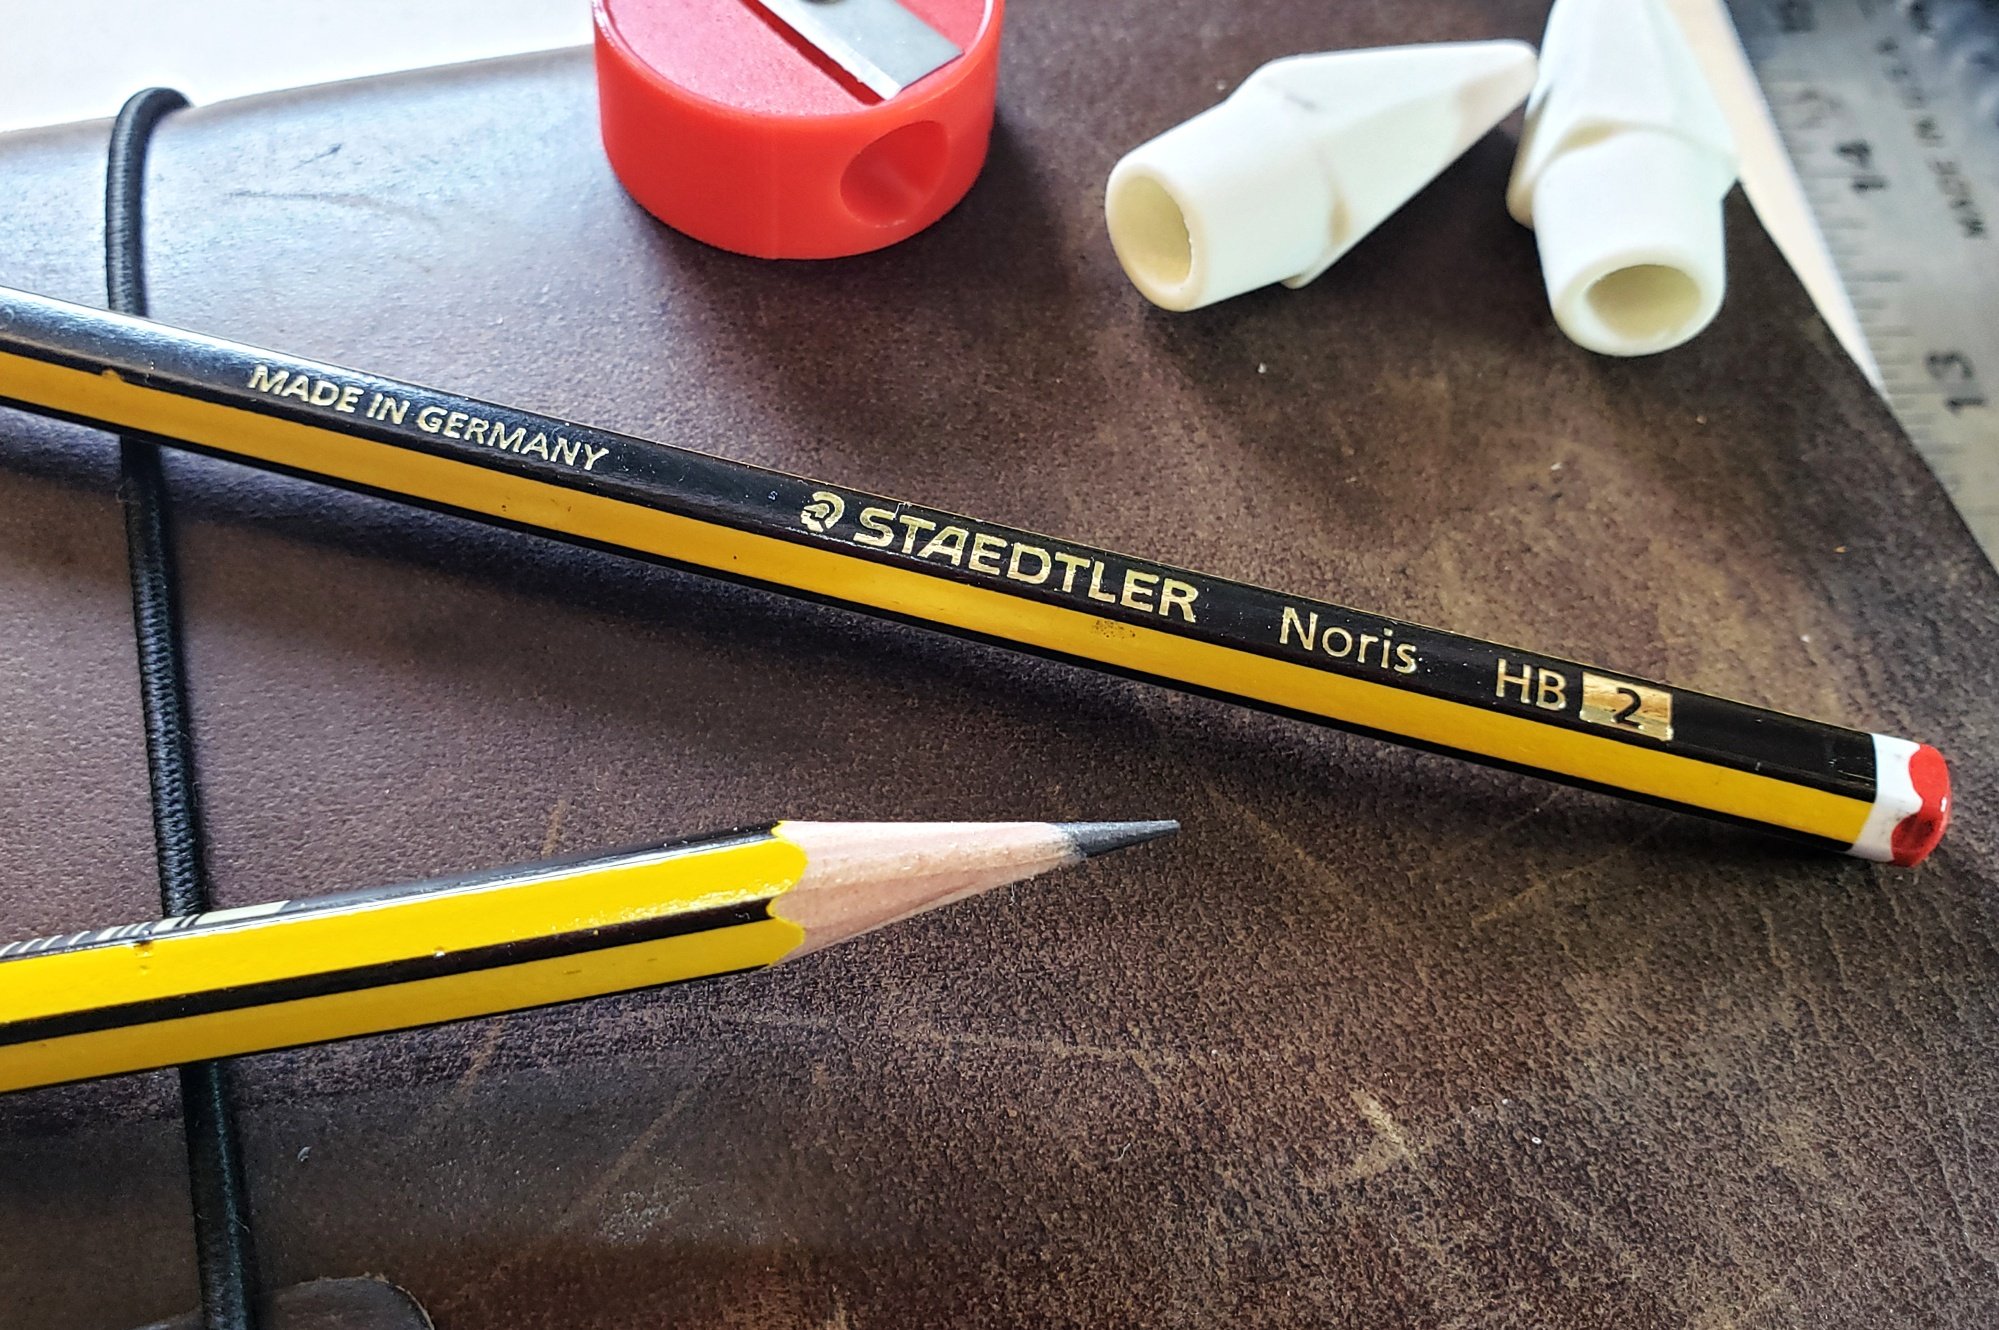 Buy 2 get 10% off 12 x Staedtler Noris Norris Pencils Boxed 121 HB 